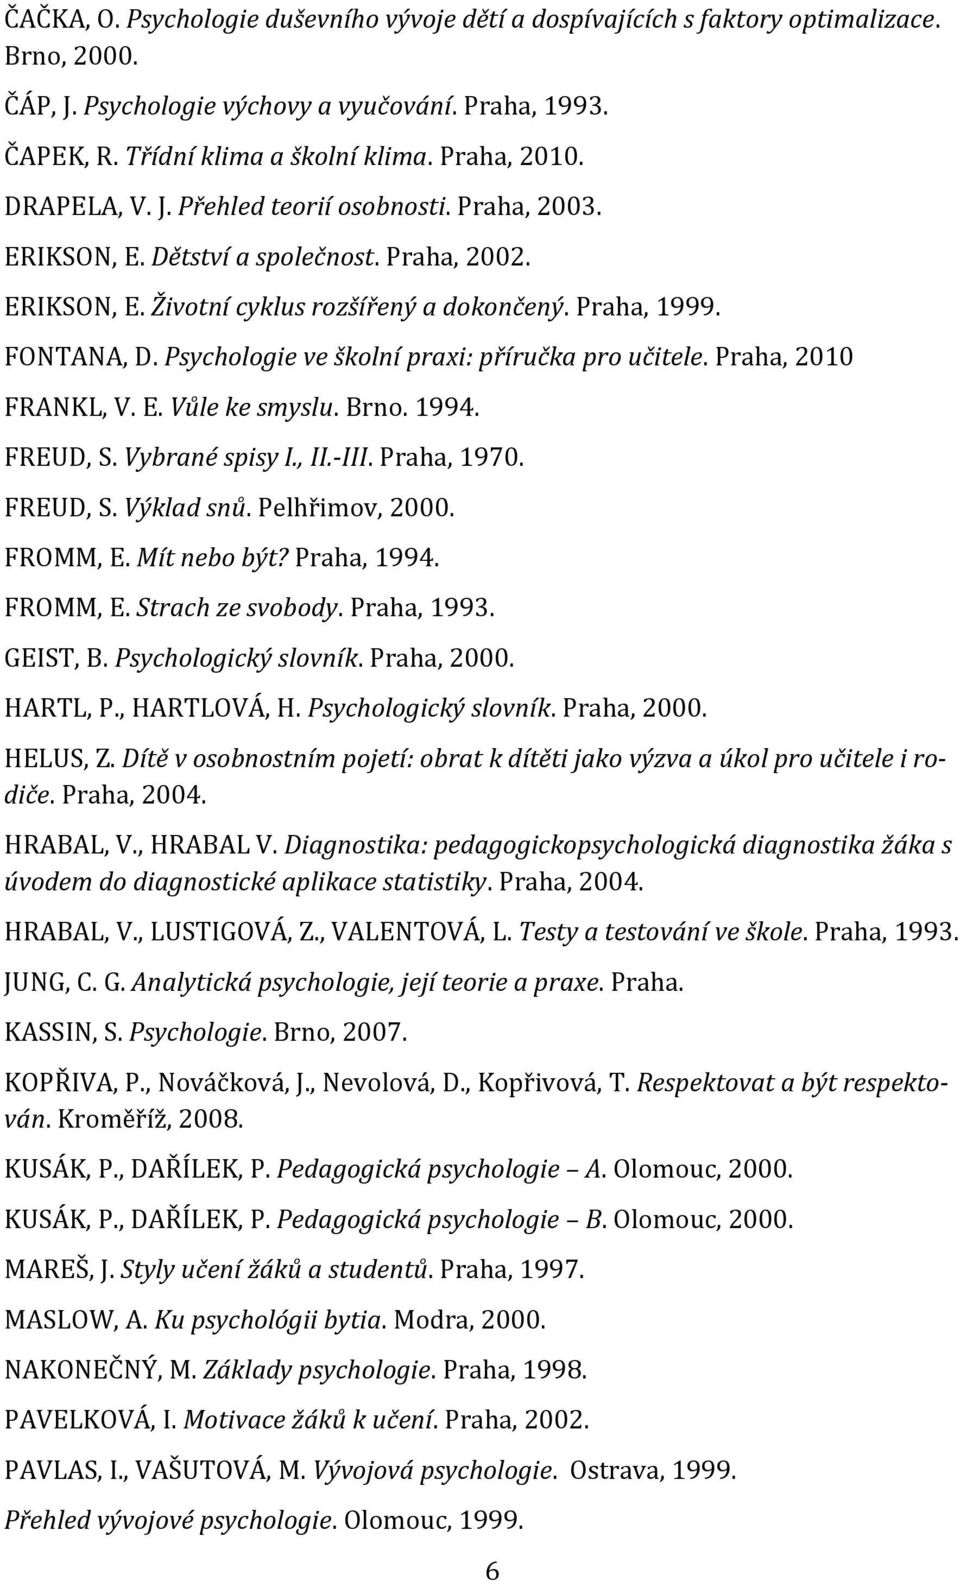 Psychologie ve školní praxi: příručka pro učitele. Praha, 2010 FRANKL, V. E. Vůle ke smyslu. Brno. 1994. FREUD, S. Vybrané spisy I., II.-III. Praha, 1970. FREUD, S. Výklad snů. Pelhřimov, 2000.